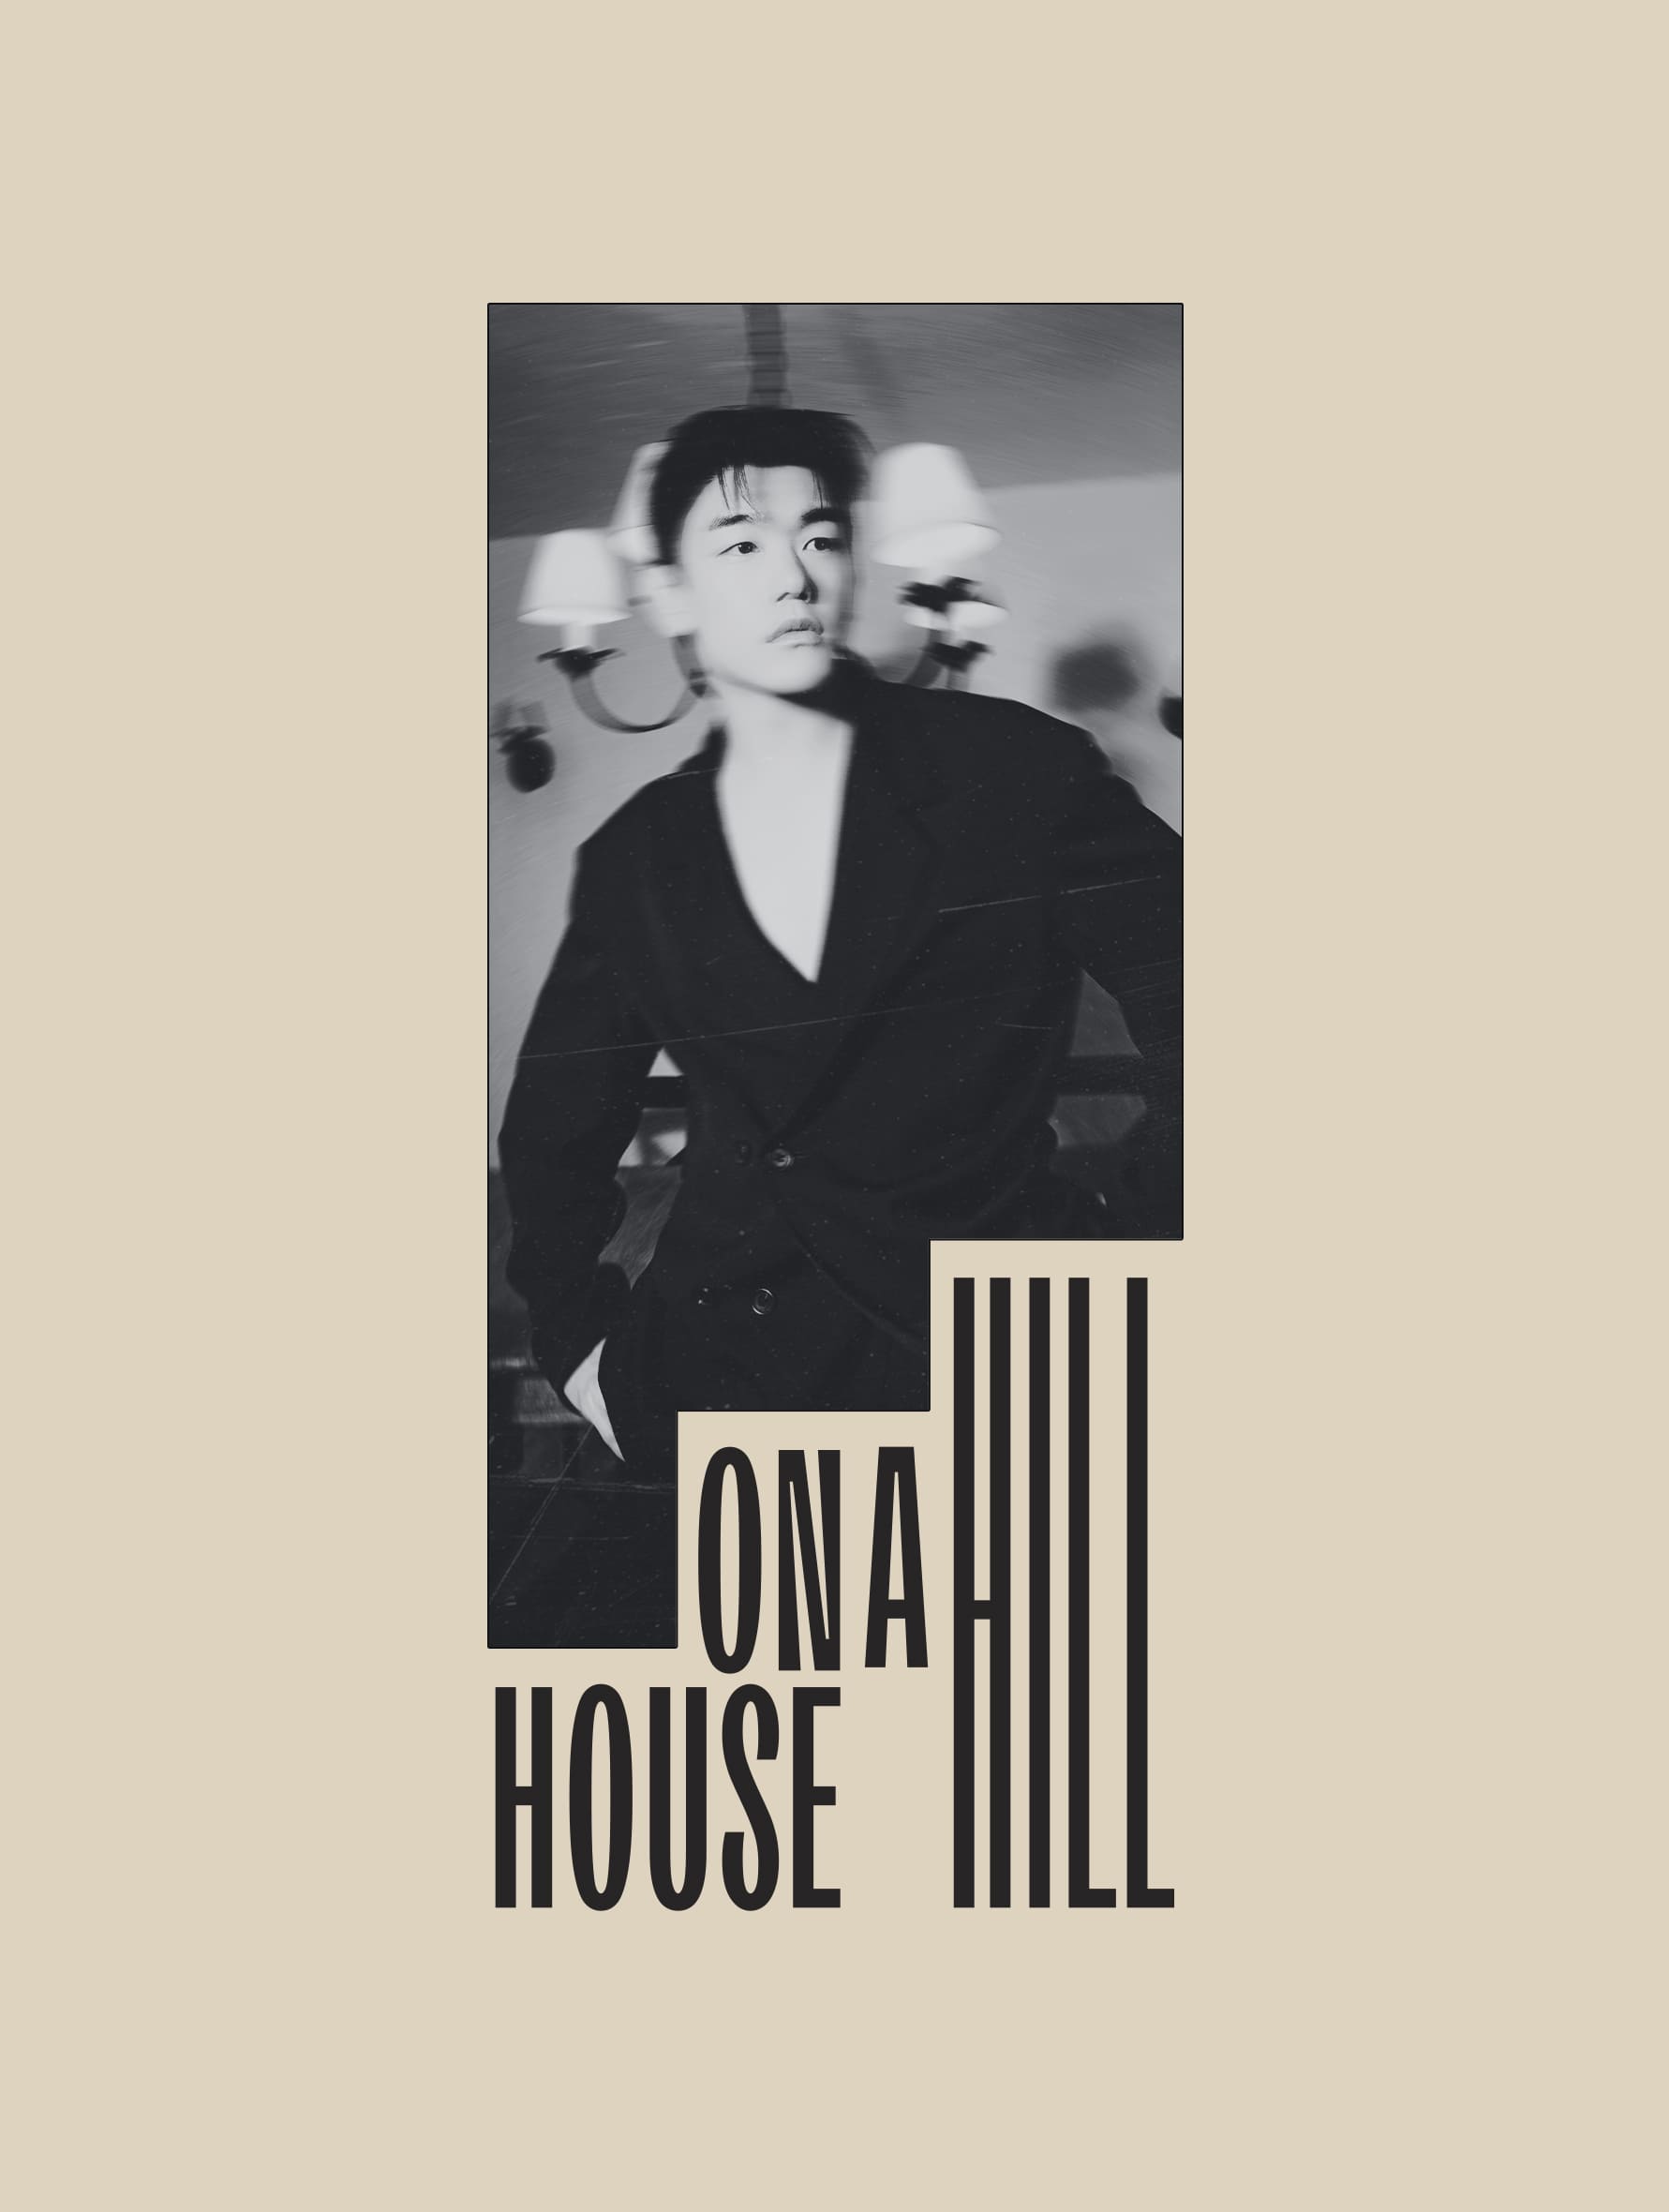 Eric Nam Full Album House on a Hill